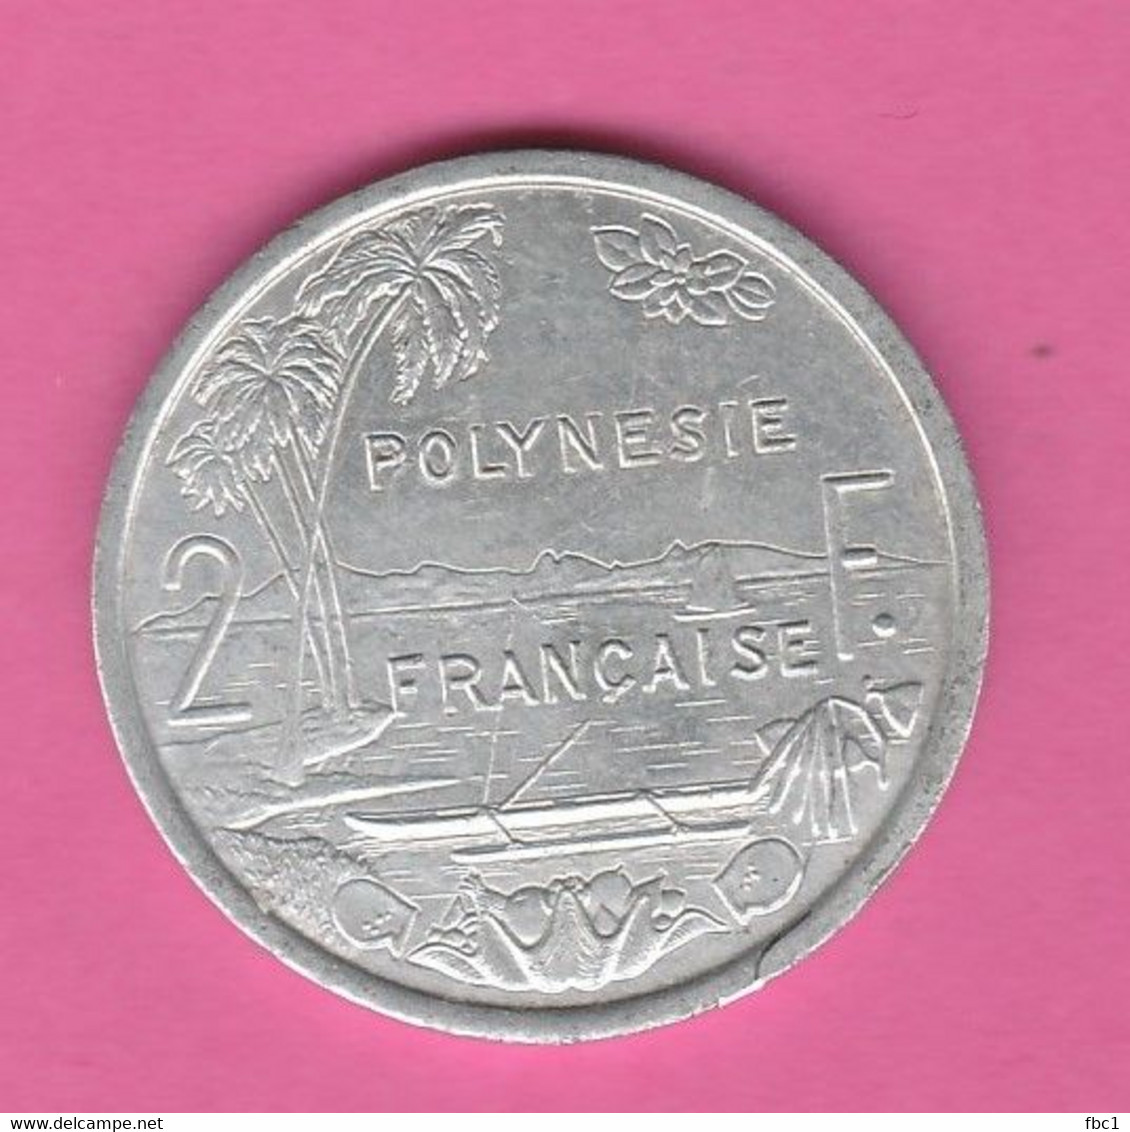 Polynésie Française - 2 Francs 1993 I.E.O.M. - Französisch-Polynesien